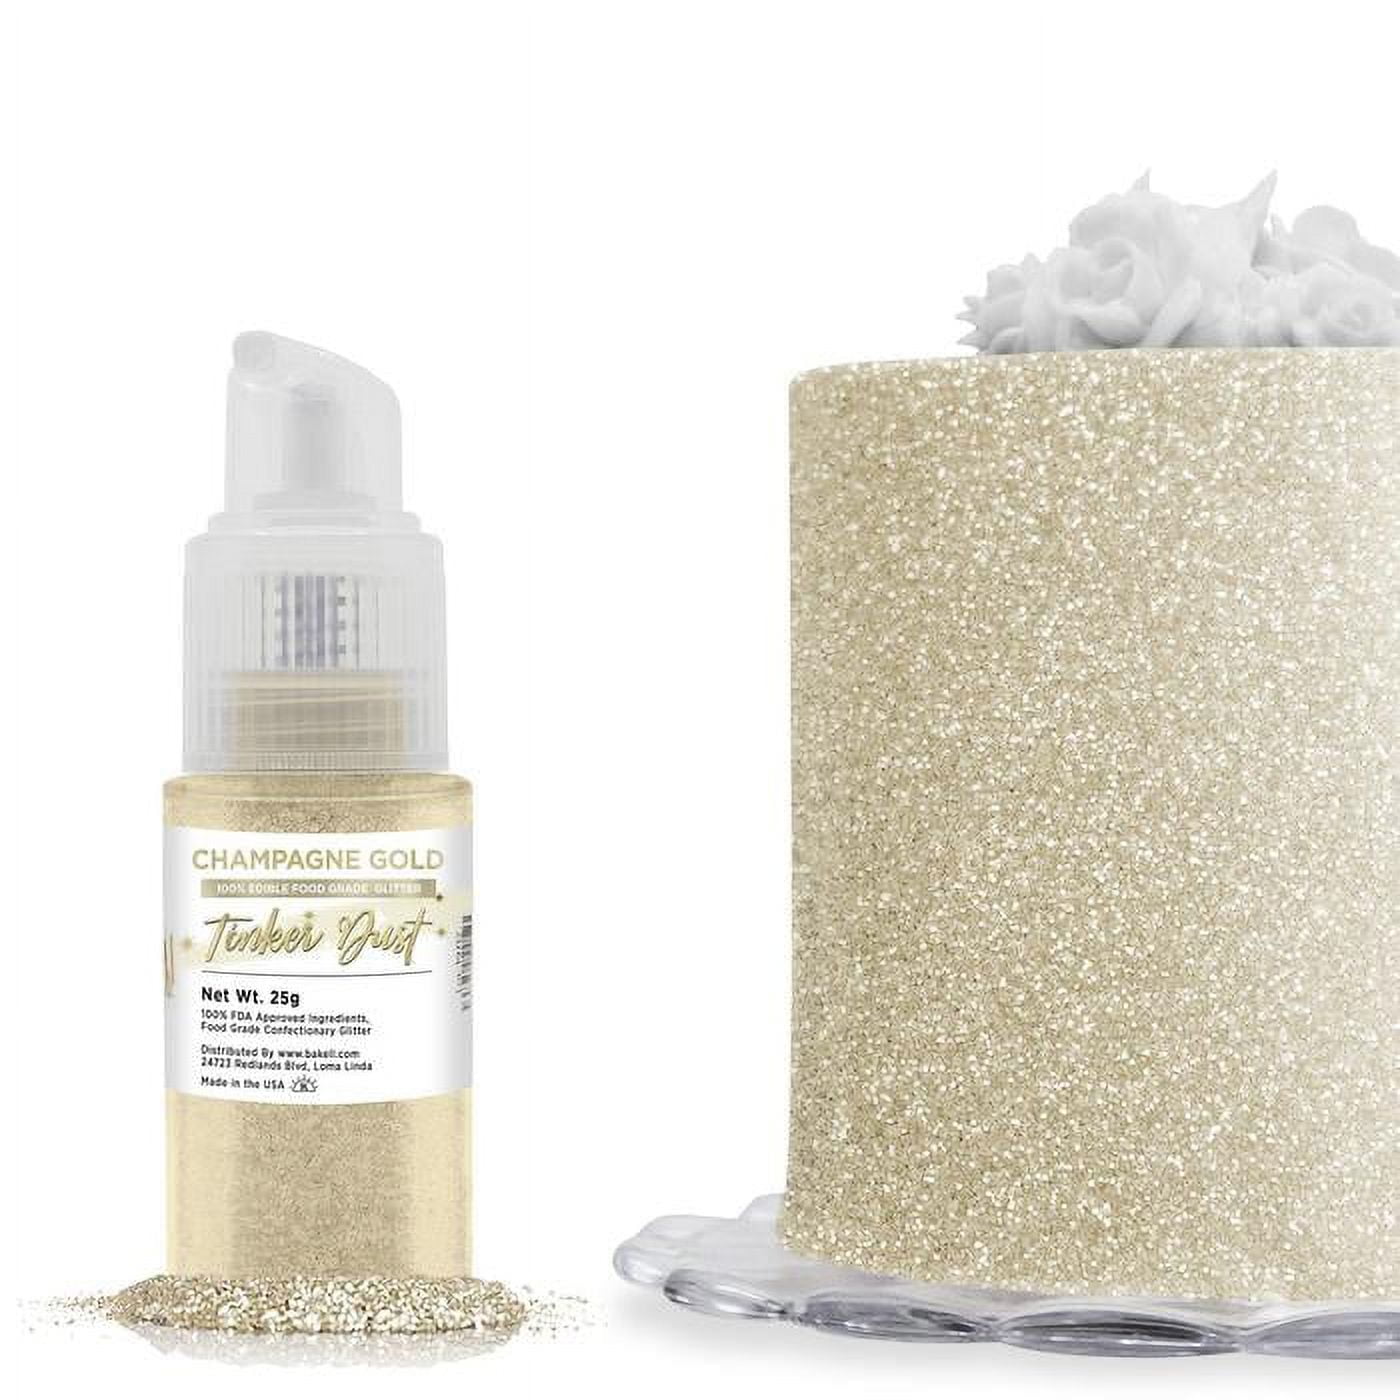 BAKELL® Bright Gold Edible Glitter Spray Pump, (25g) | TINKER DUST Edible  Glitter | KOSHER Certified | 100% Edible Glitter | Cakes, Cupcakes, Cake